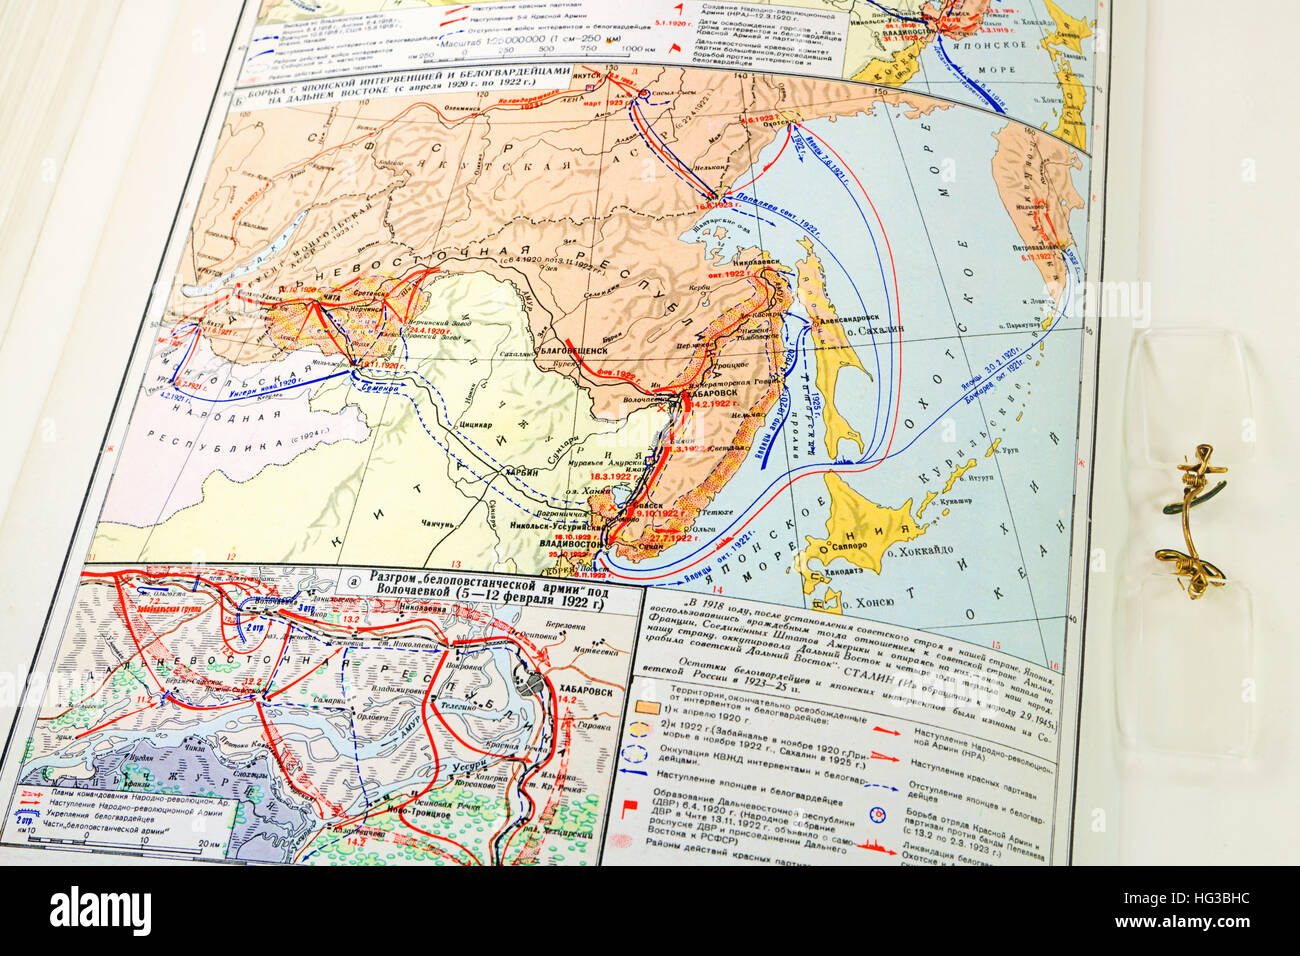 Mapa de batalla en el Lejano Oriente 1920-1922 Foto de stock